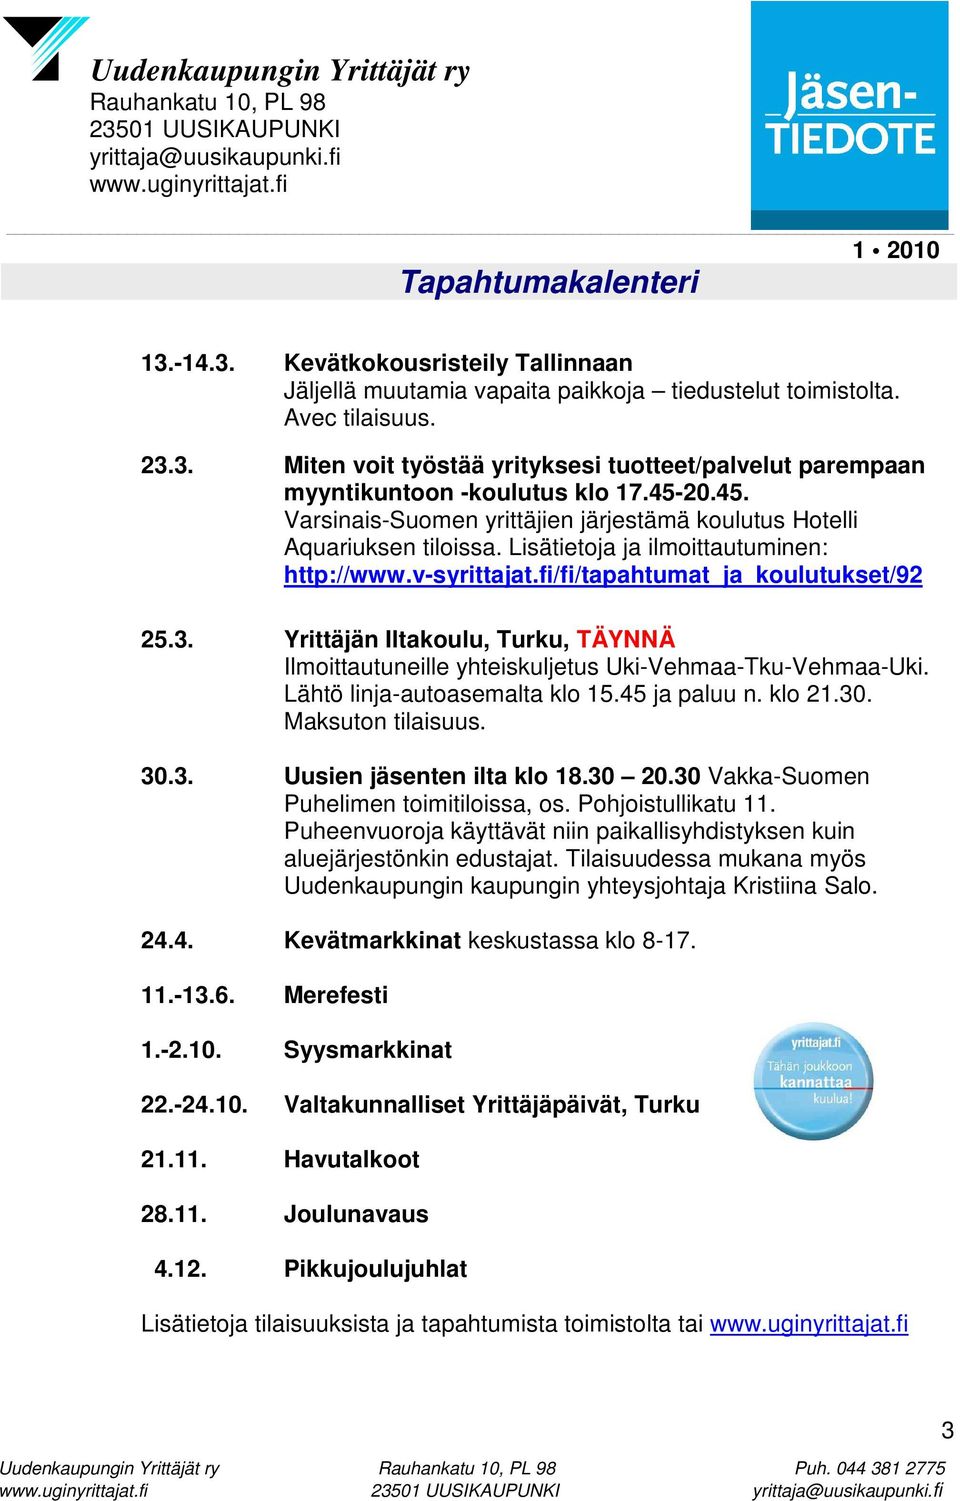 Yrittäjän Iltakoulu, Turku, TÄYNNÄ Ilmoittautuneille yhteiskuljetus Uki-Vehmaa-Tku-Vehmaa-Uki. Lähtö linja-autoasemalta klo 15.45 ja paluu n. klo 21.30. Maksuton tilaisuus. 30.3. Uusien jäsenten ilta klo 18.